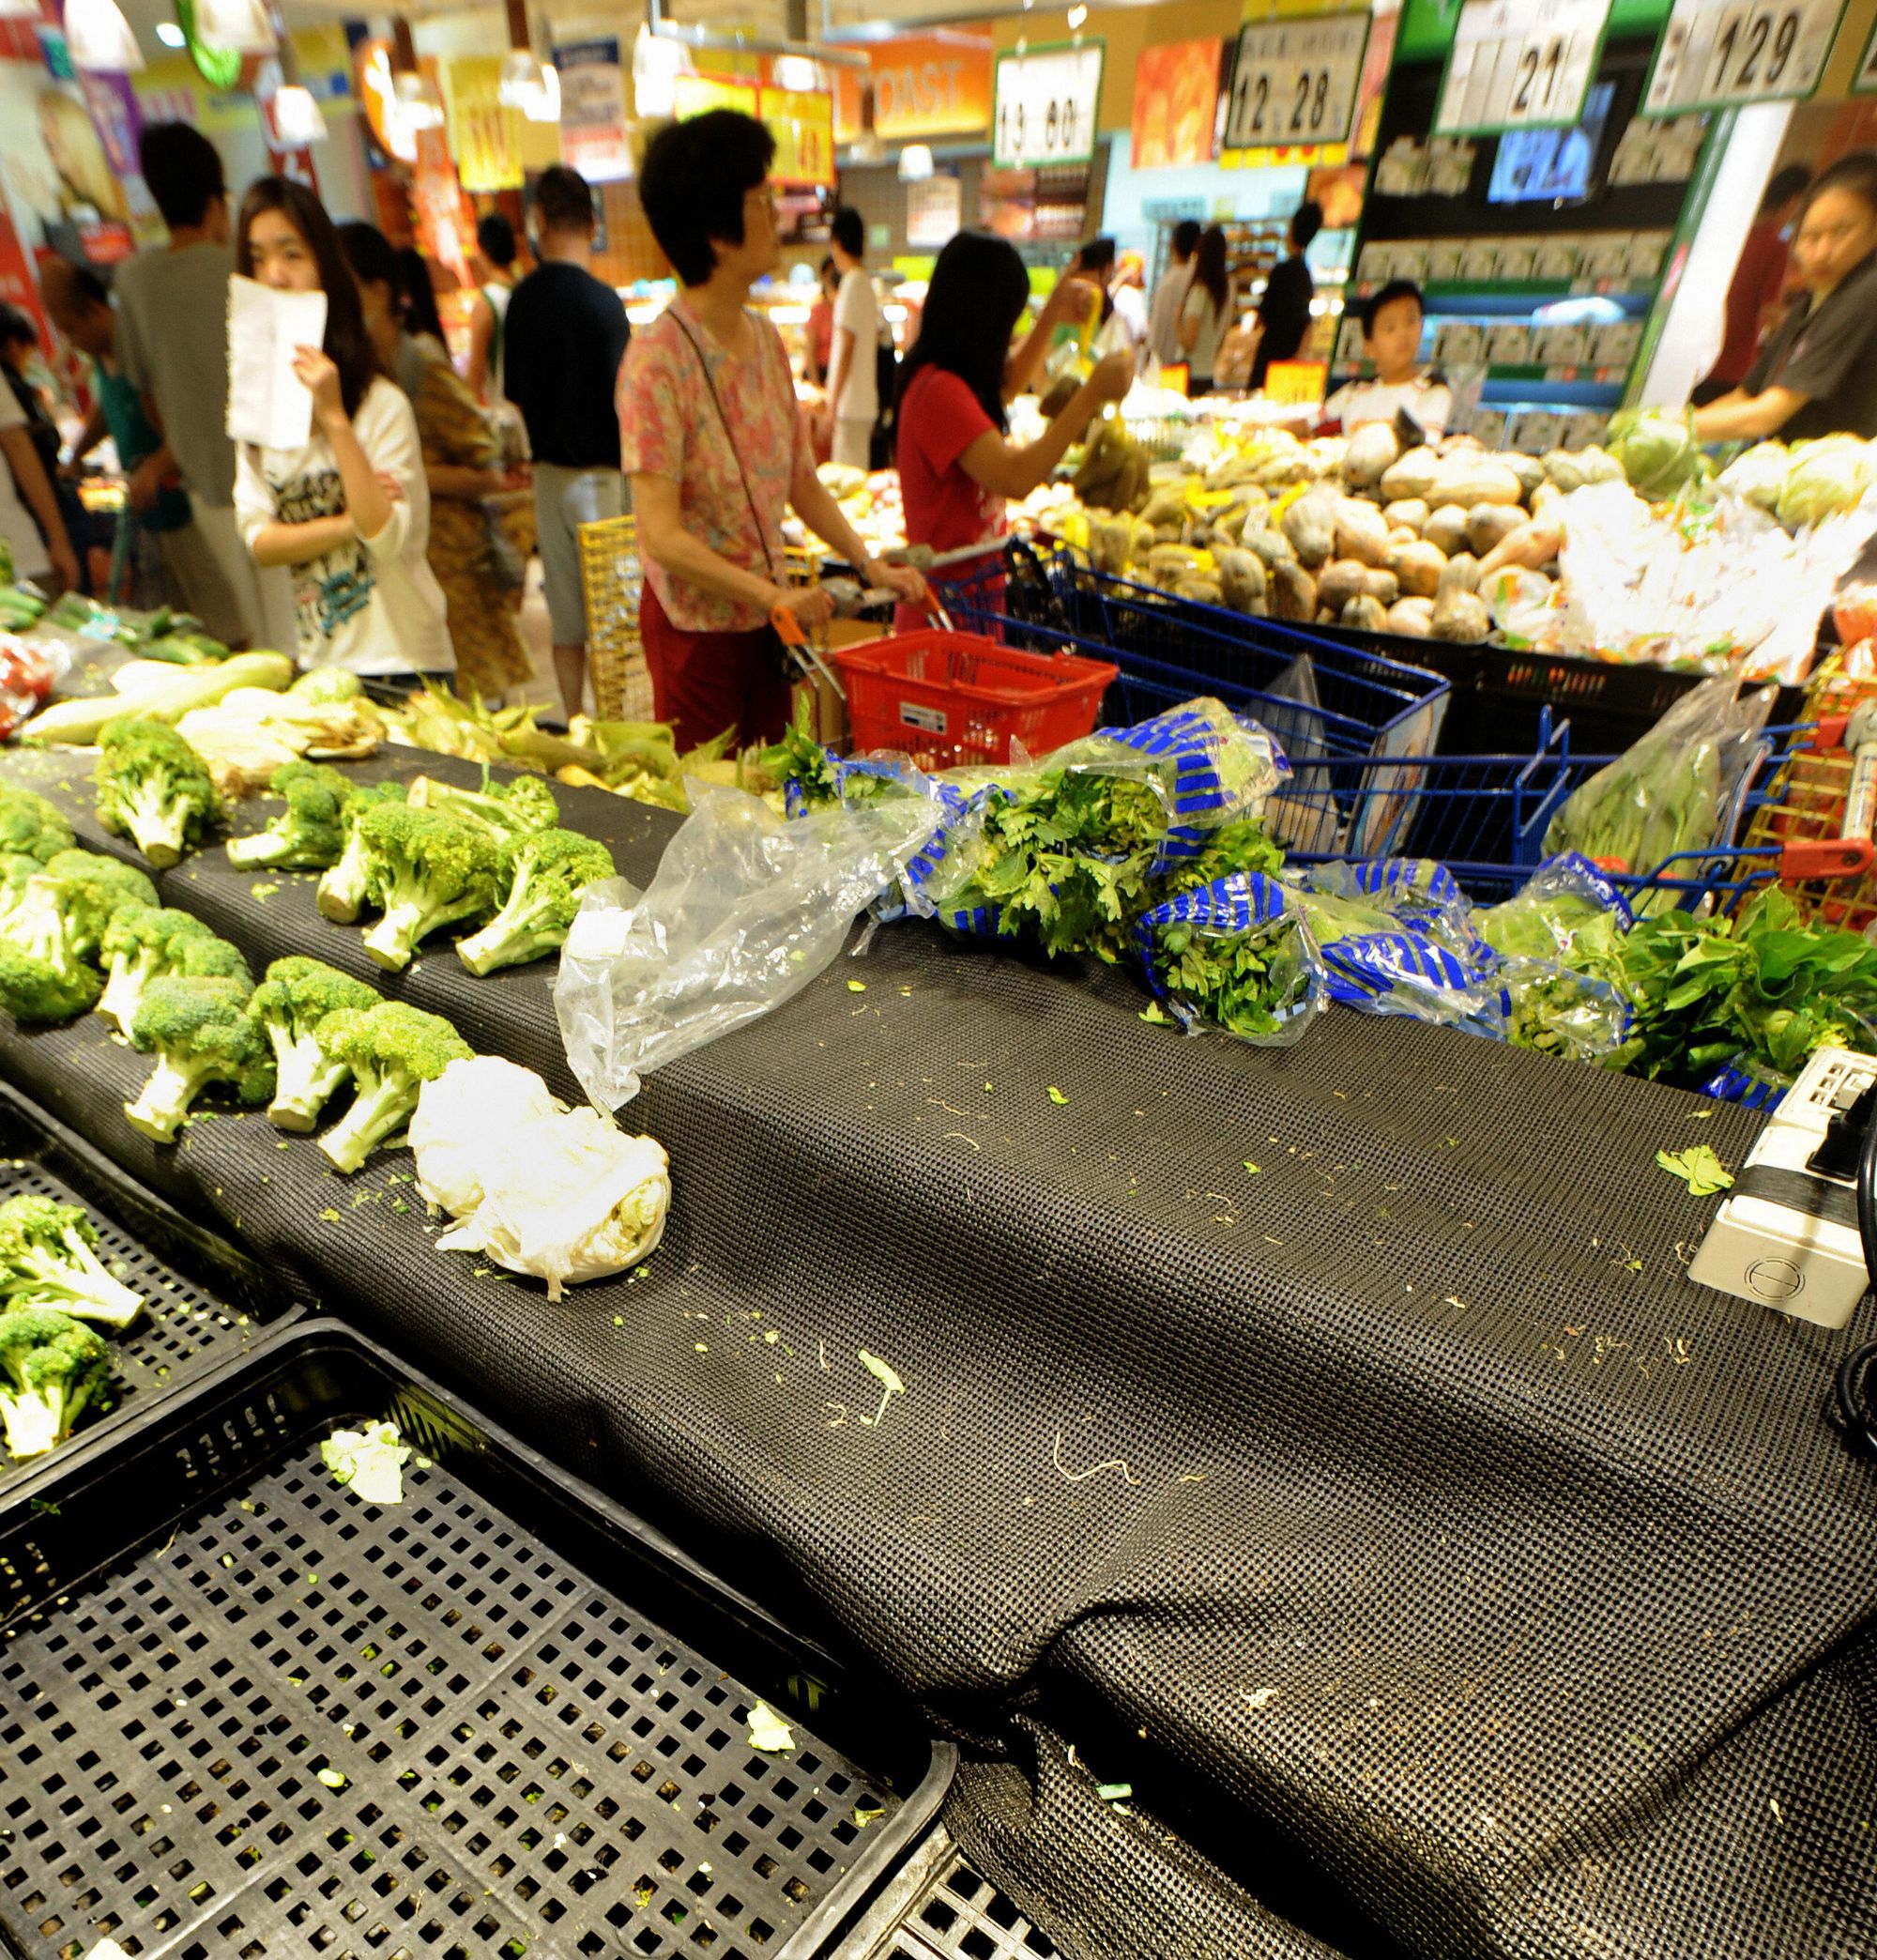 莫拉克带来的恶水重创台湾南部。台北超级市场内的蔬菜应声高涨。